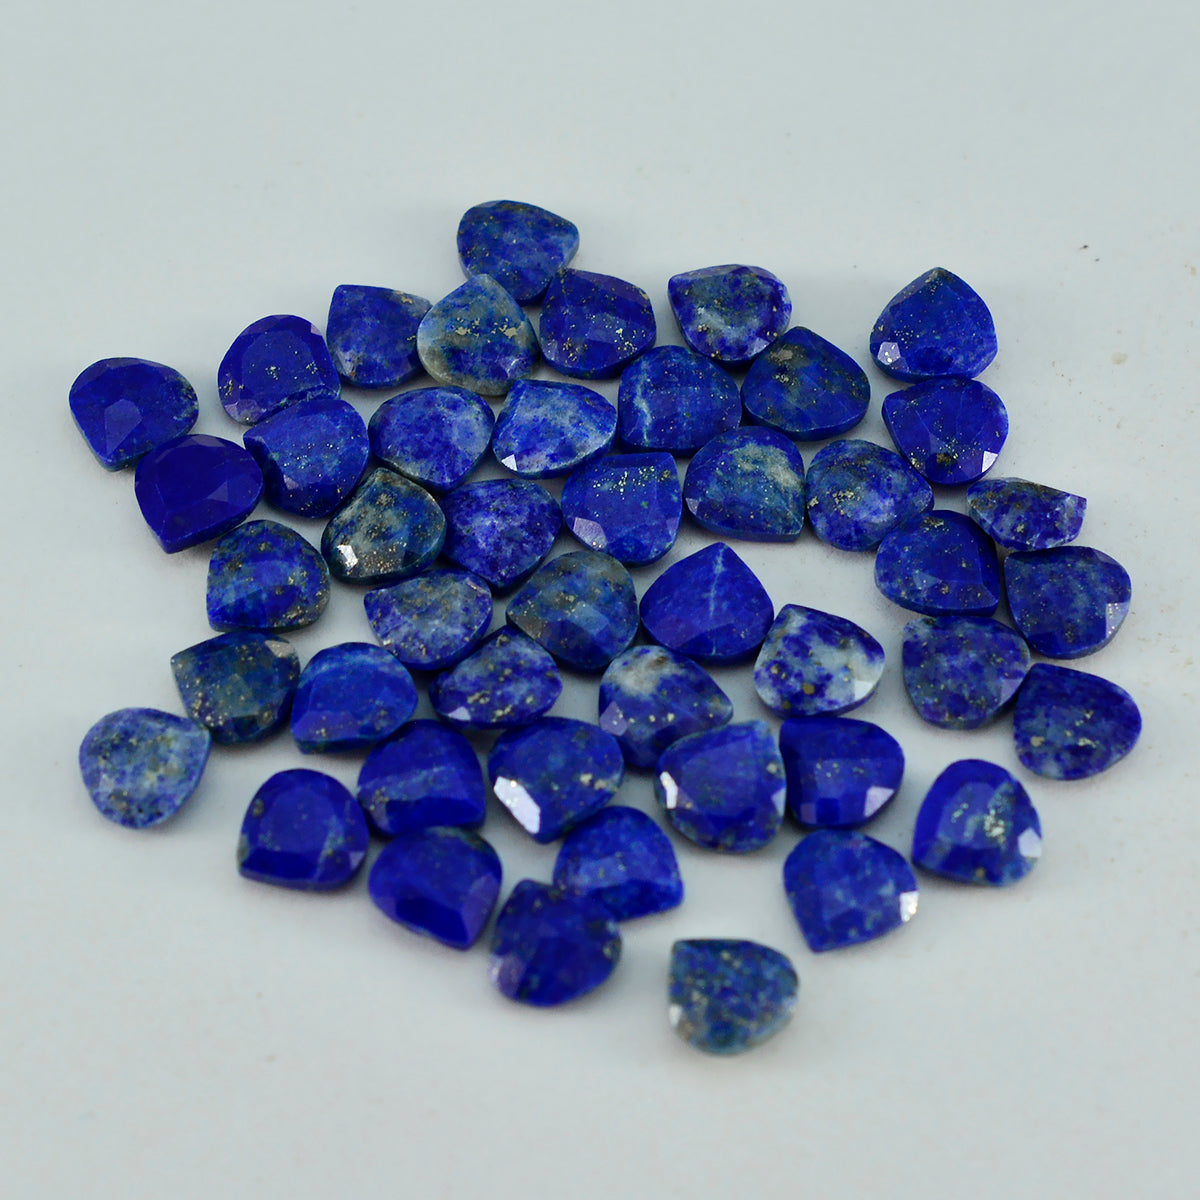 Riyogems 1 pièce de lapis-lazuli bleu véritable à facettes 7x7mm en forme de cœur, pierres précieuses en vrac de qualité fantastique